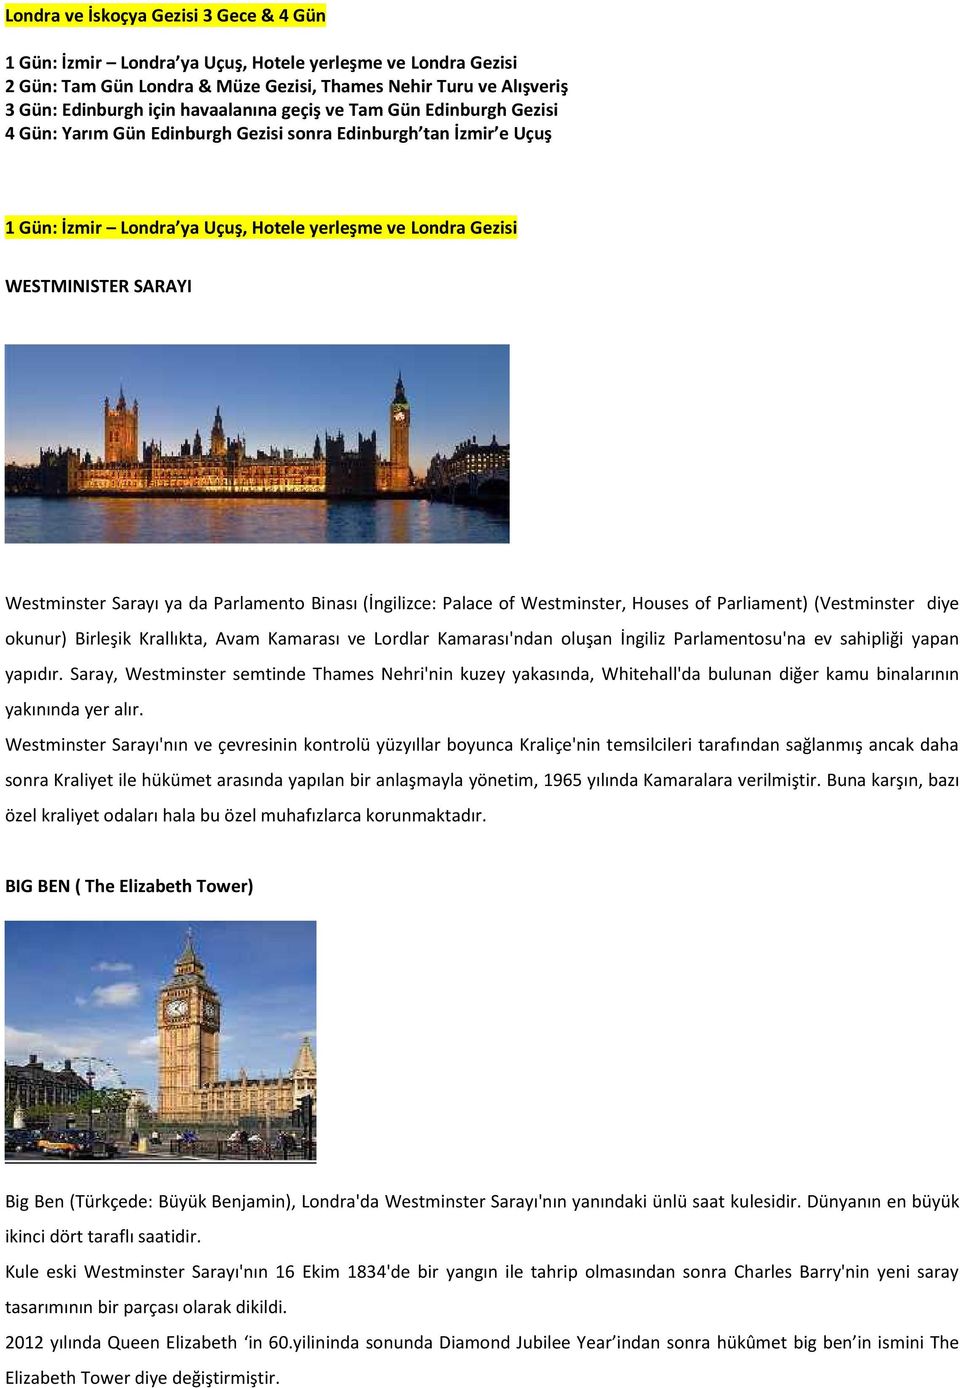 Westminster Sarayı ya da Parlamento Binası (İngilizce: Palace of Westminster, Houses of Parliament) (Vestminster diye okunur) Birleşik Krallıkta, Avam Kamarası ve Lordlar Kamarası'ndan oluşan İngiliz